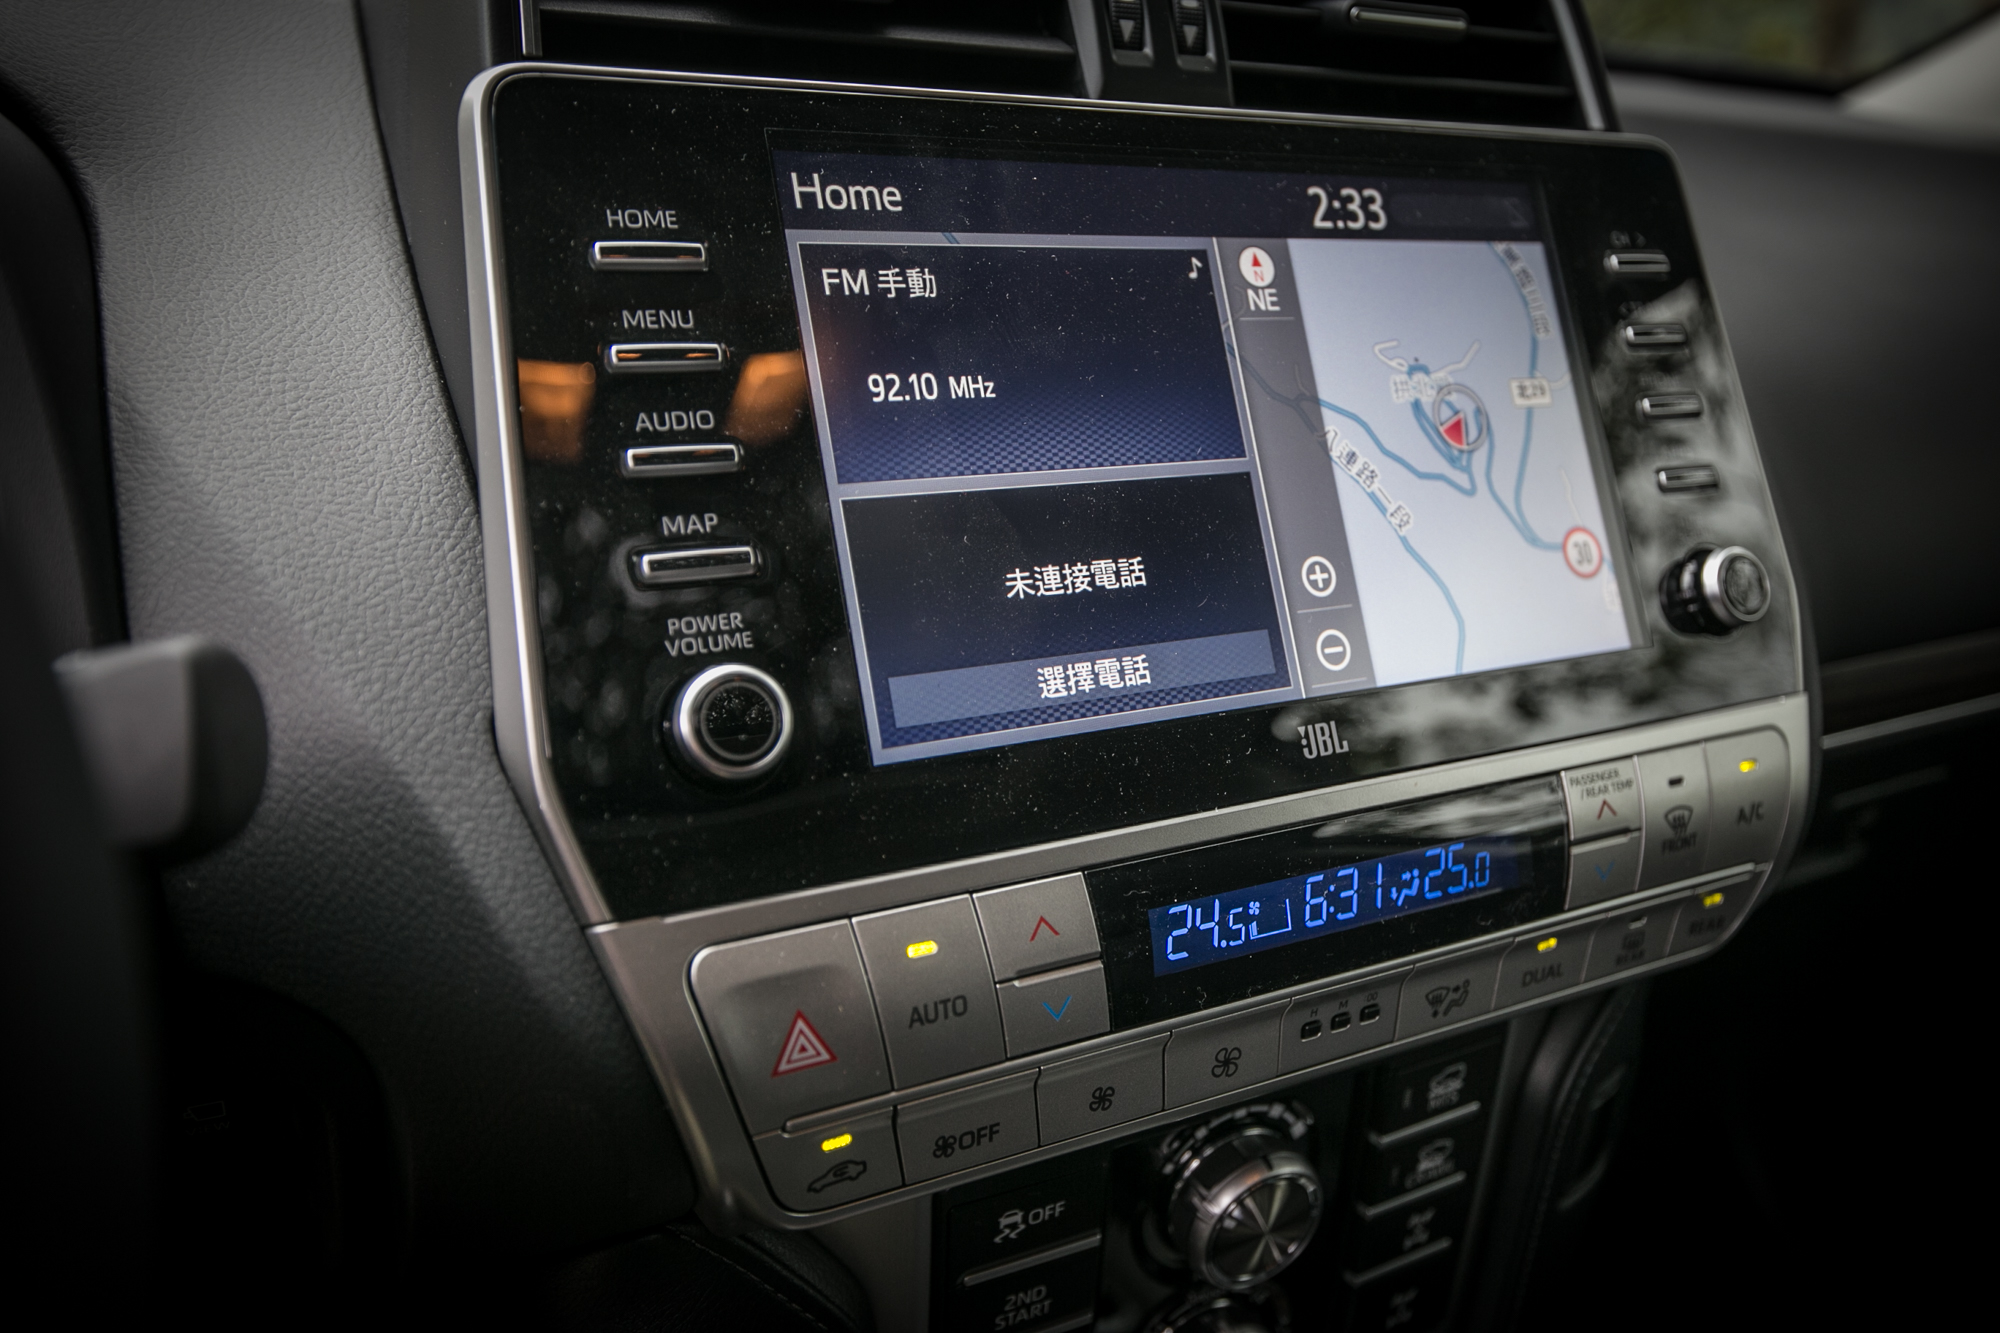 9 吋觸控式導航影音主機附有 Apple CarPlay/Android Auto 智慧型手機連結功能，並配備 JBL 14 具揚聲器立體環繞音效。